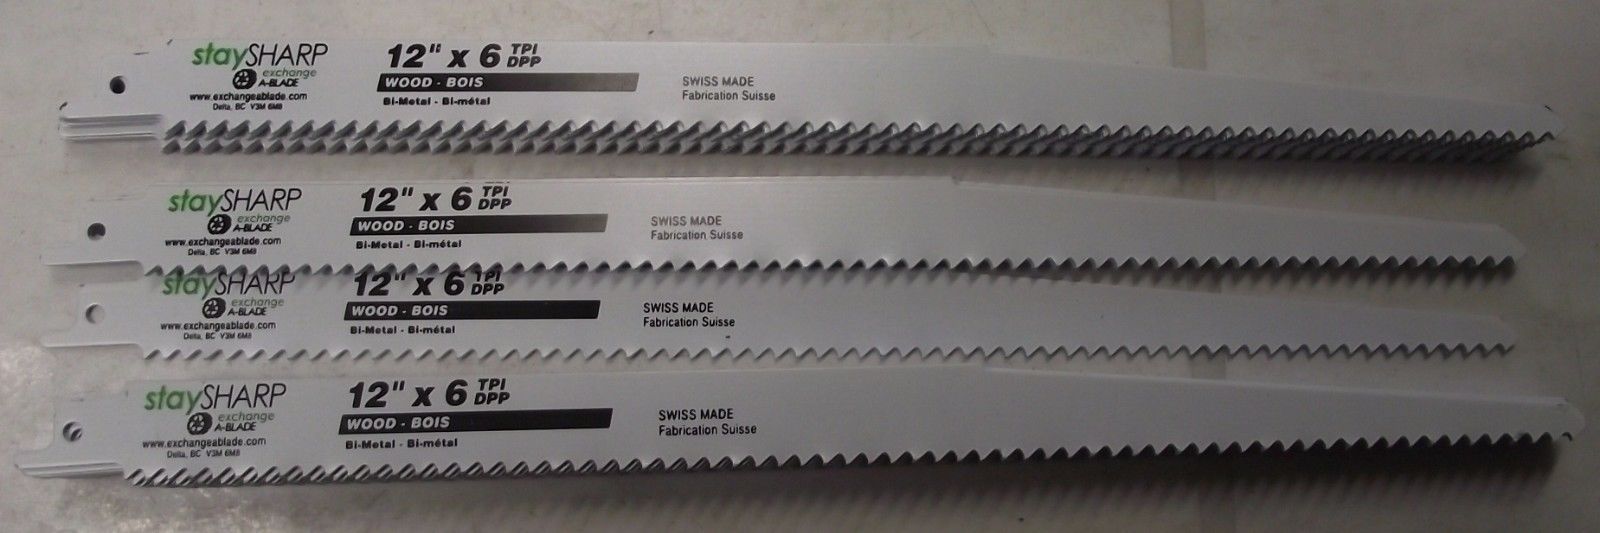 Exchange A-Blade 171150 12" x 6TPI Recip Saw Blades Bi-Metal  25pcs. Swiss